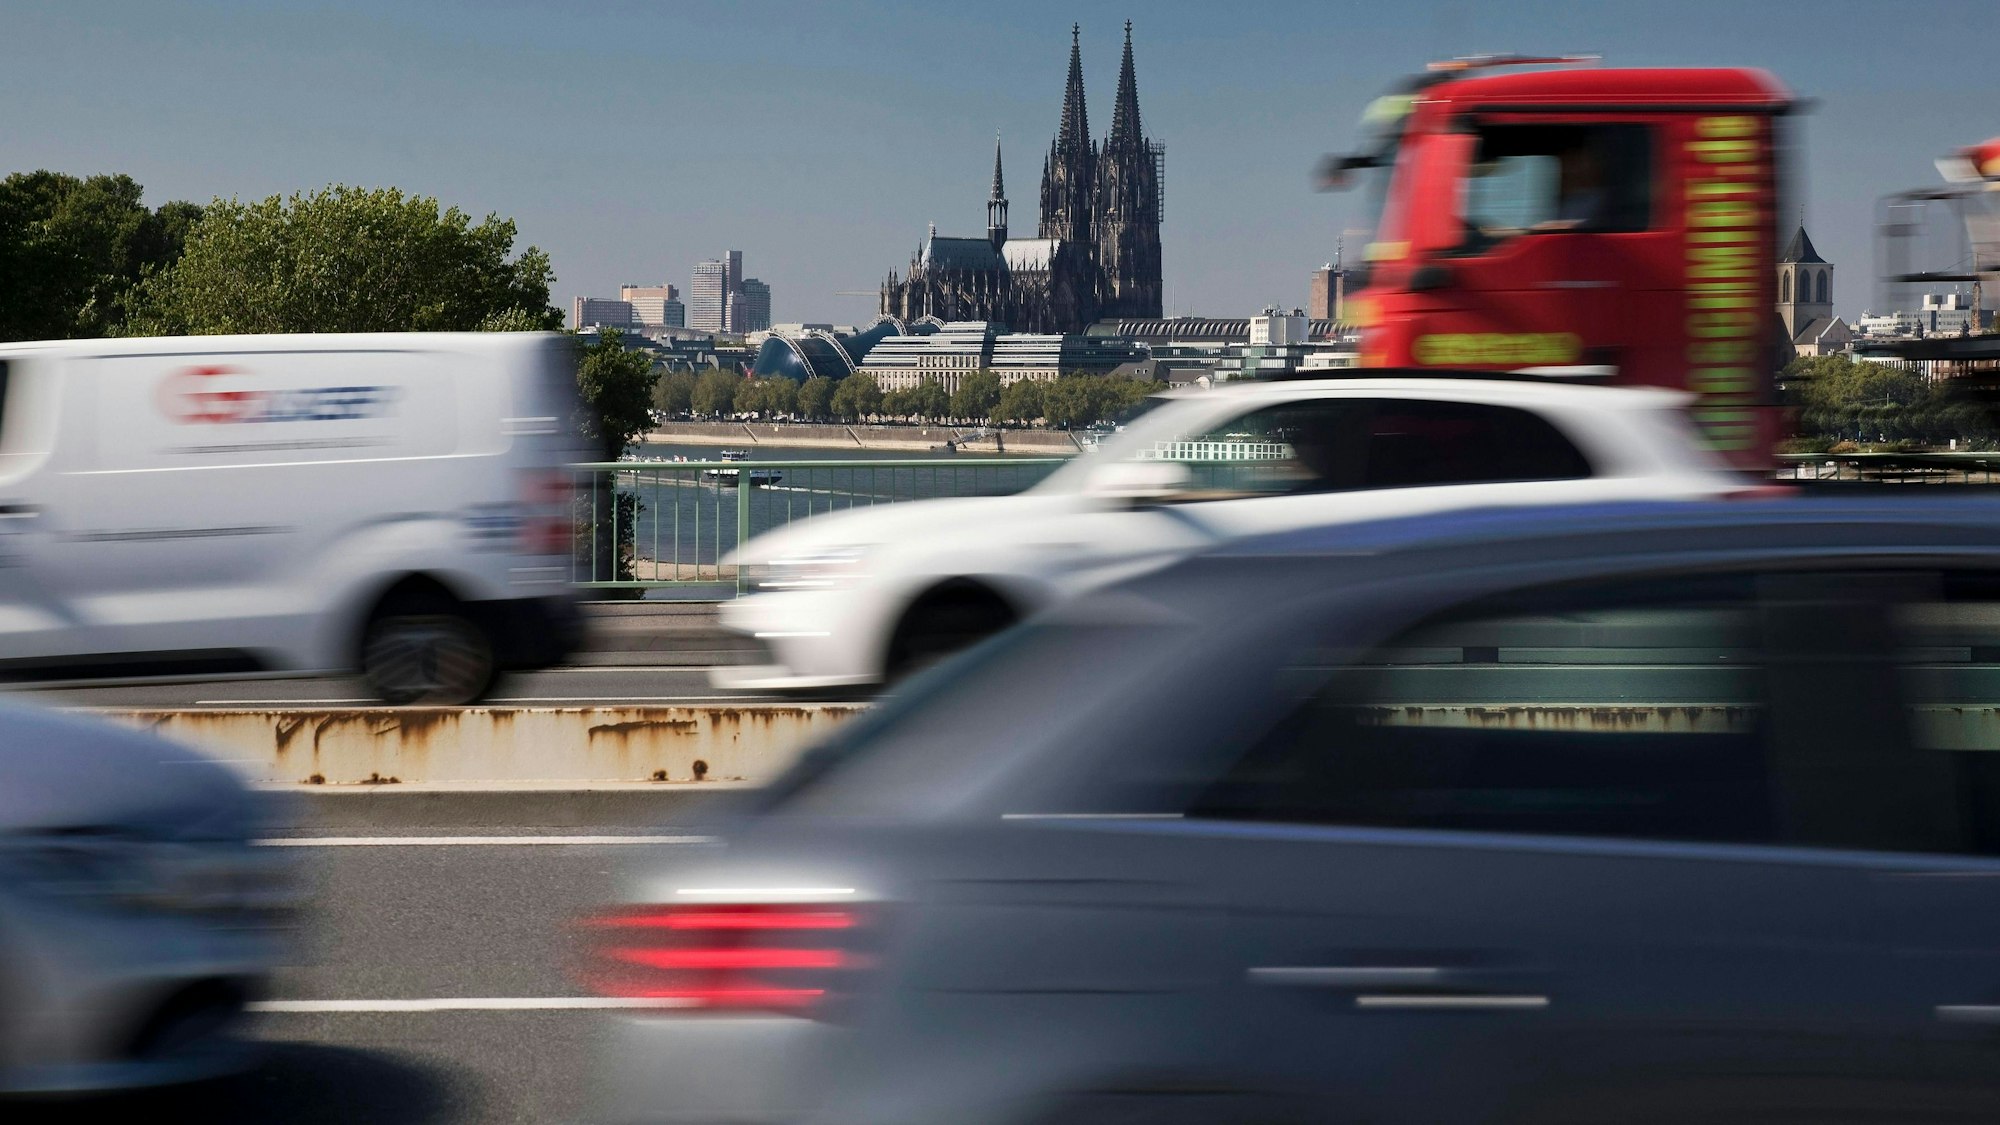 Die Kölner Zoobrücke gehört zu den am meisten befahrenen Routen in der Domstadt. Nun kommen Einschränkungen auf die Autofahrer zu. (Archivbild)